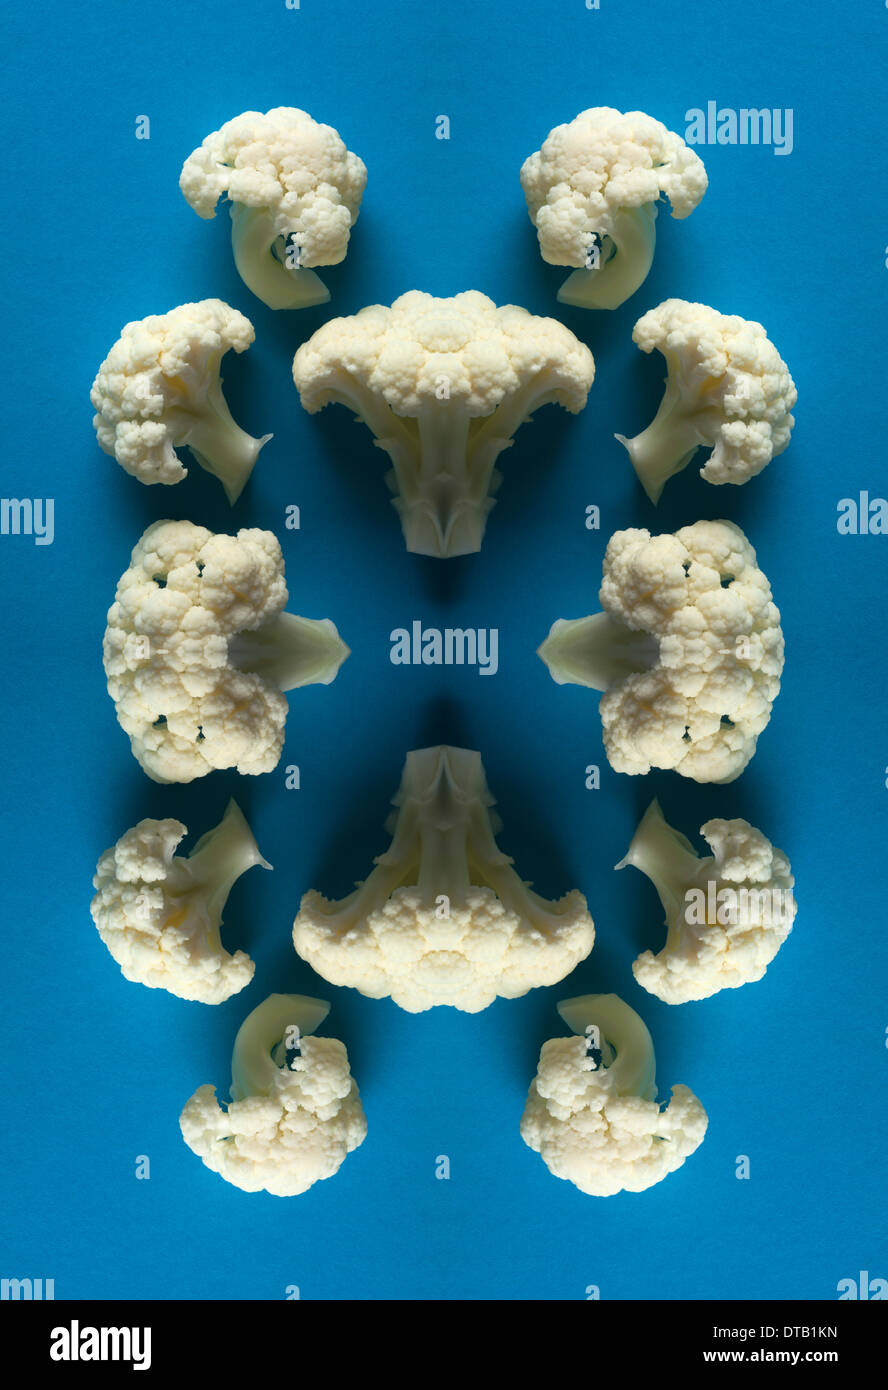 Un composite numérique d'images en miroir d'un assemblage de pièces de chou-fleur Banque D'Images